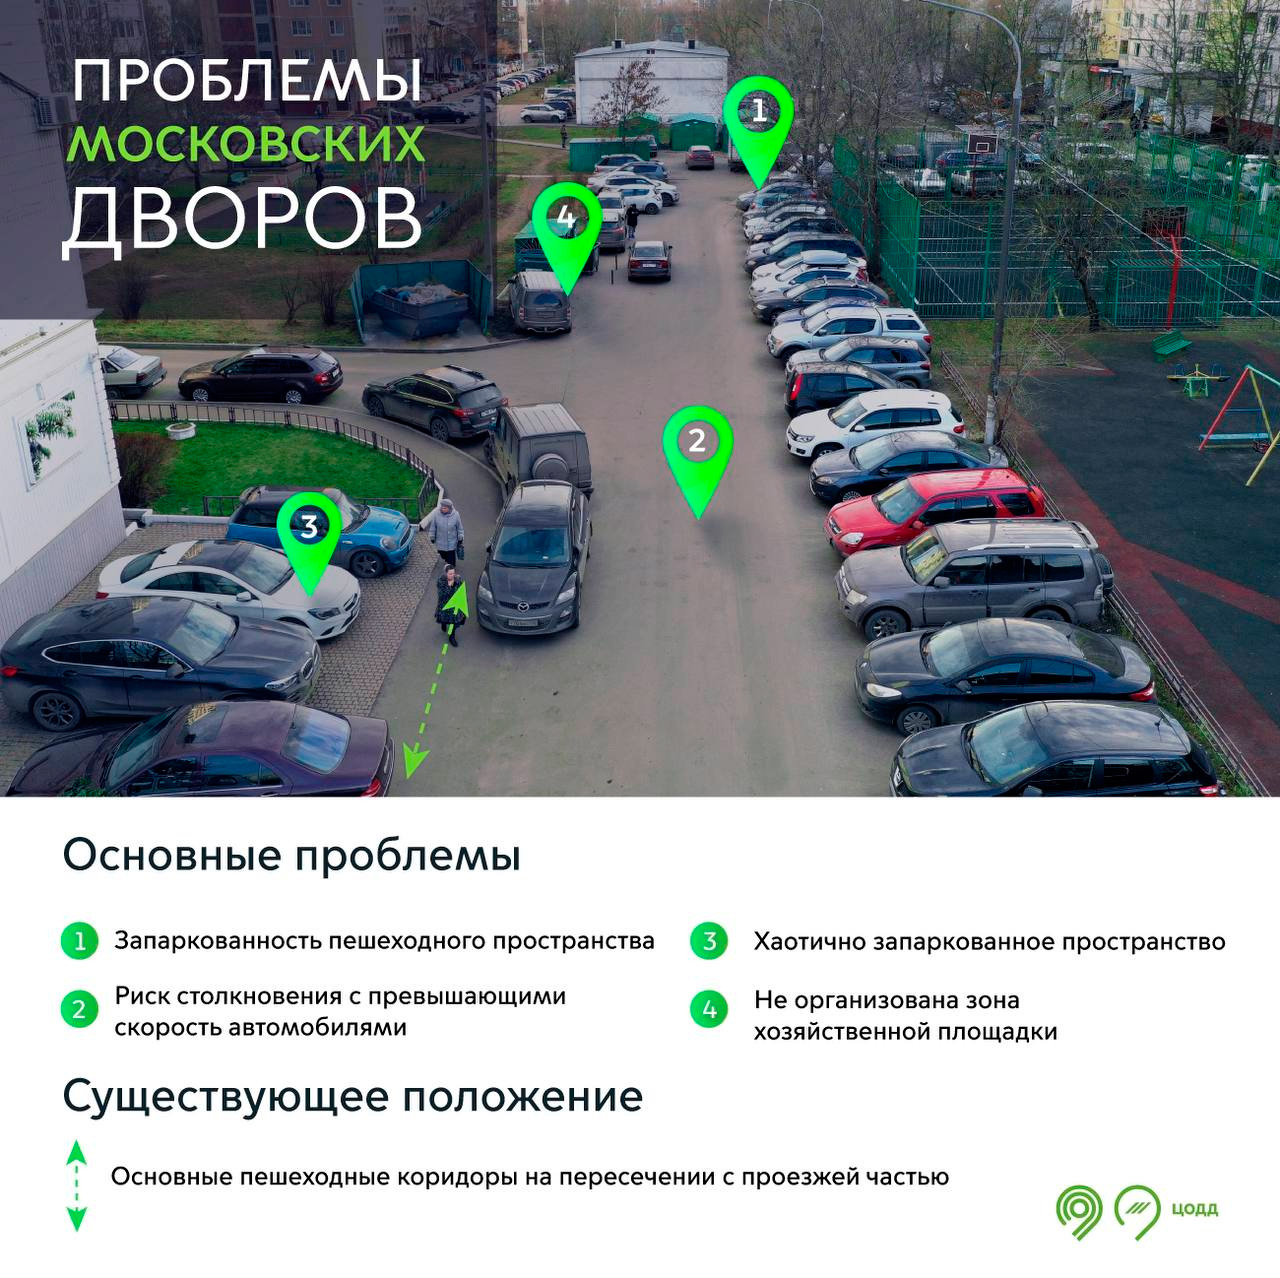 Московские власти рассказали о главных причинах ДТП во дворах